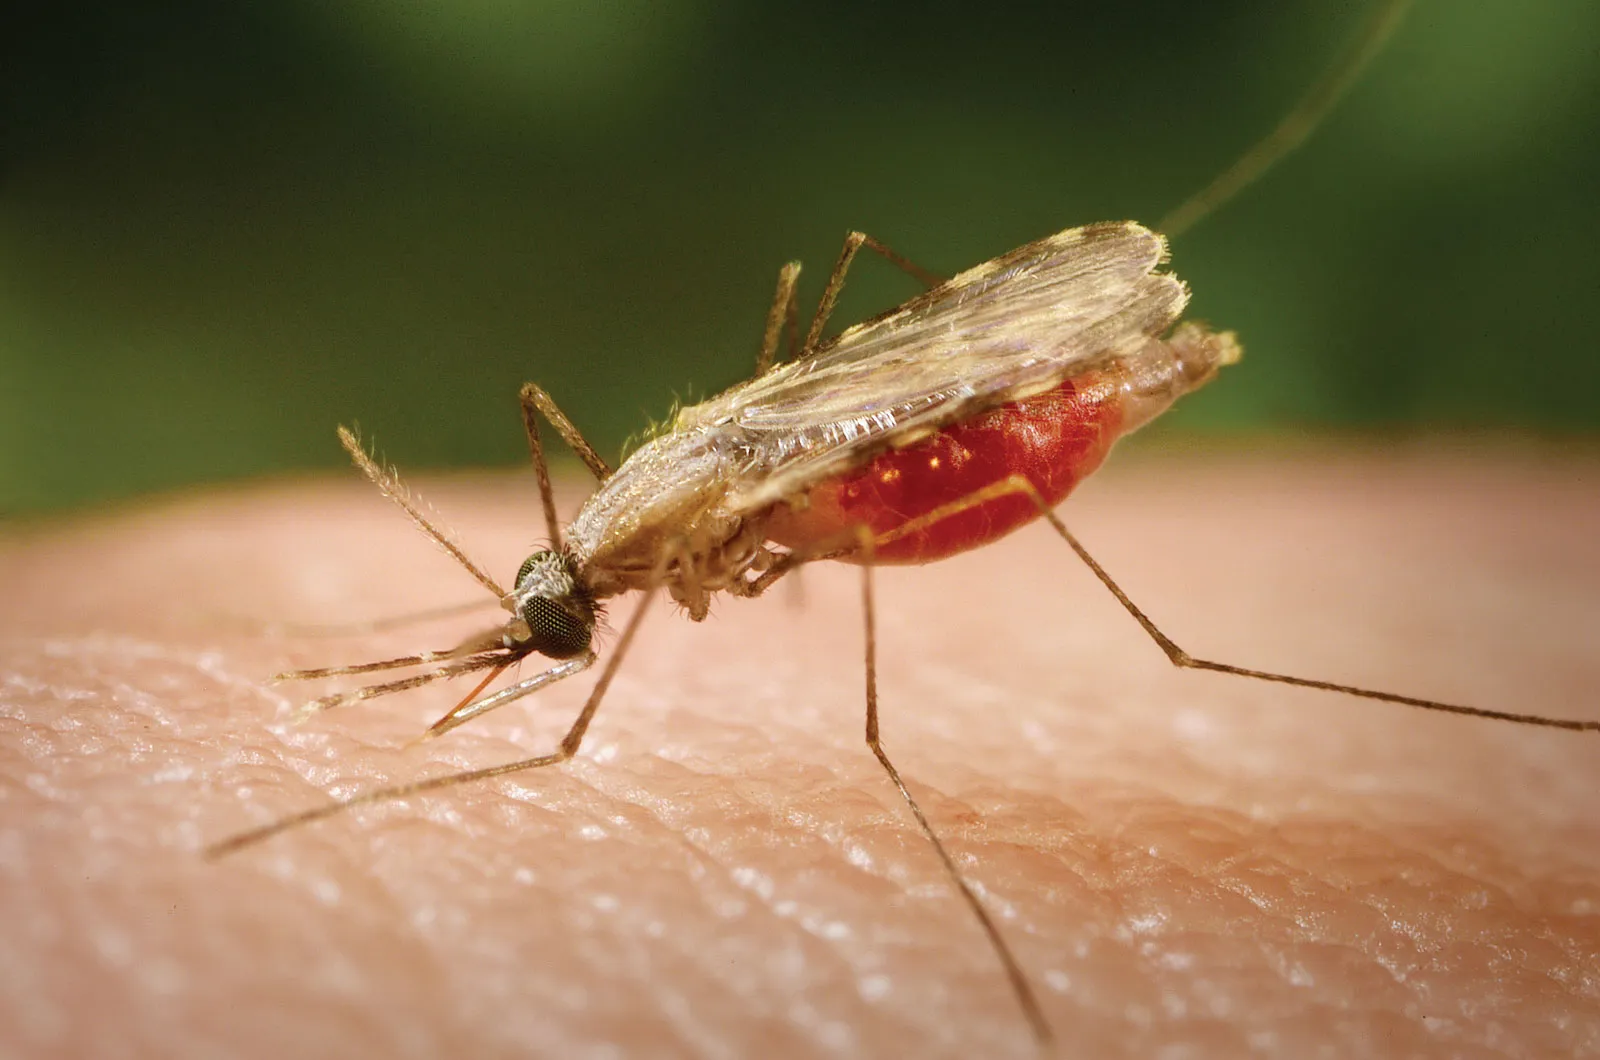 ملاريا